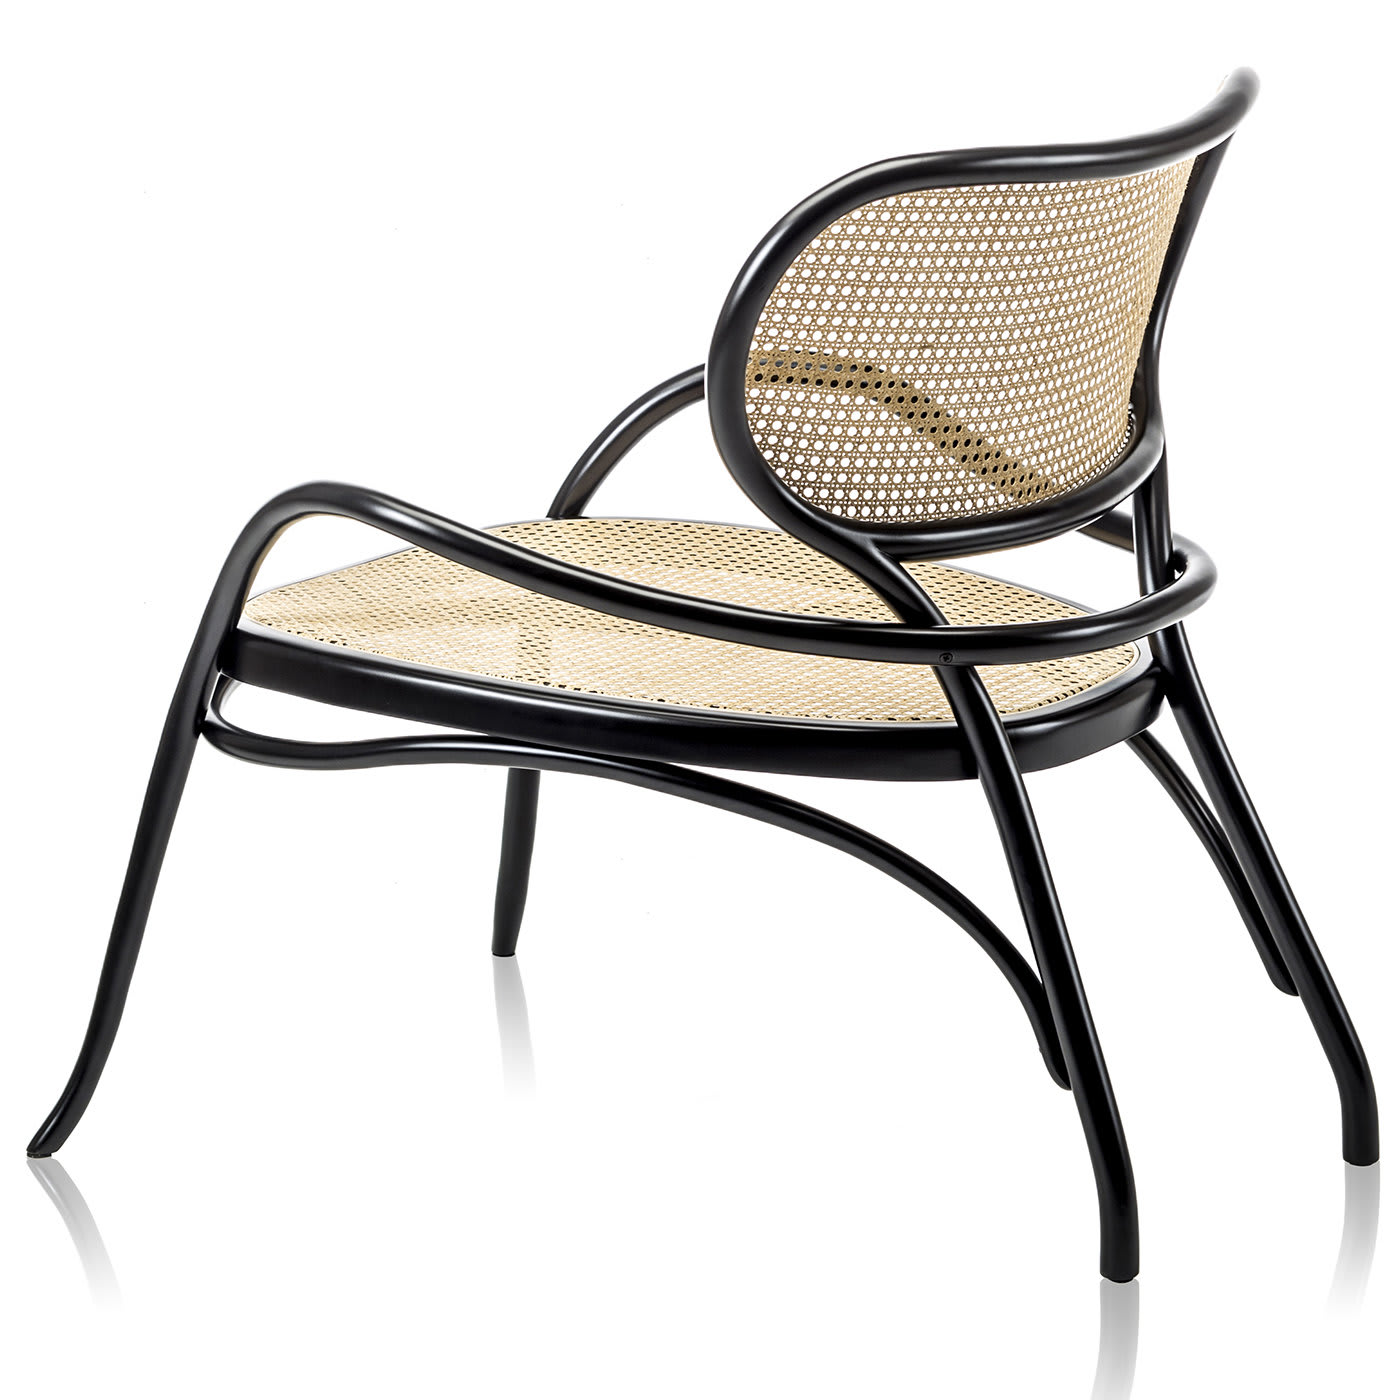 Lehnstuhl Lounge Chair by Nigel Coates - Gebrüder Thonet Vienna GmbH (GTV) – Wiener GTV Design